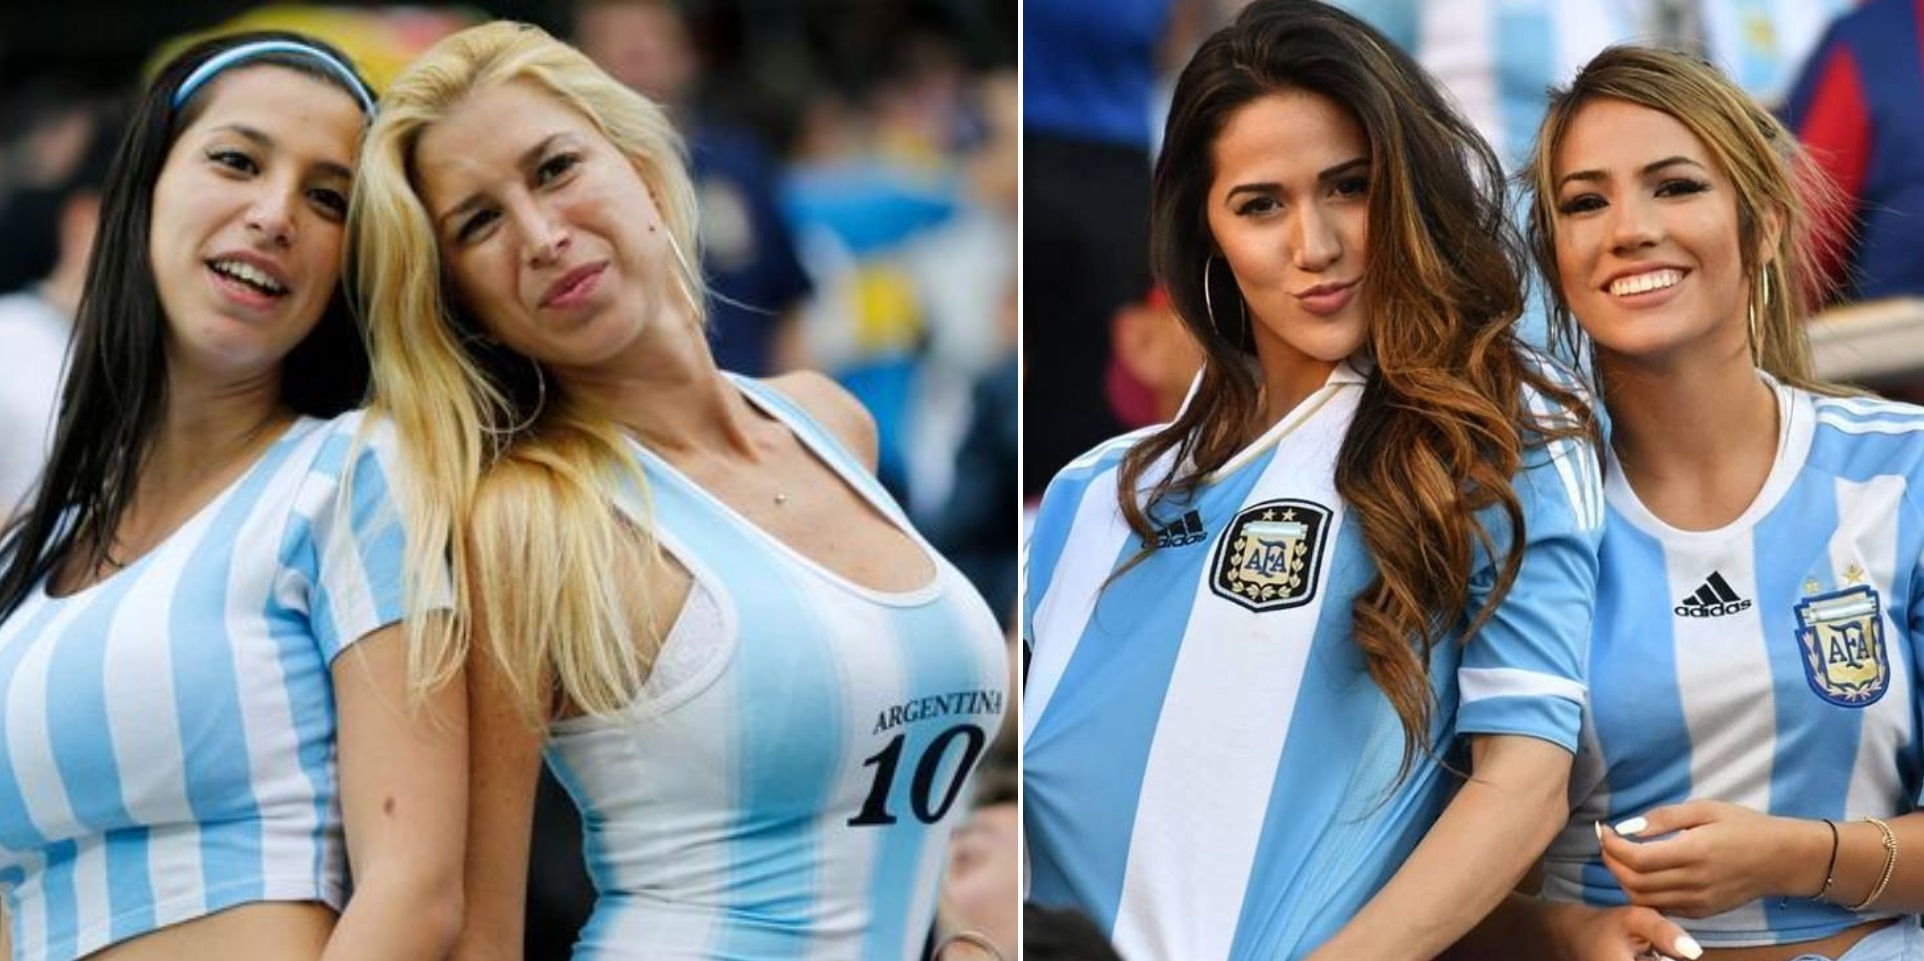 Μουντιάλ 2022: «Καυτή» οπαδός της Αργεντινής «τα πέταξε έξω» στις κερκίδες μετά τη νίκη στον τελικό (βίντεο)